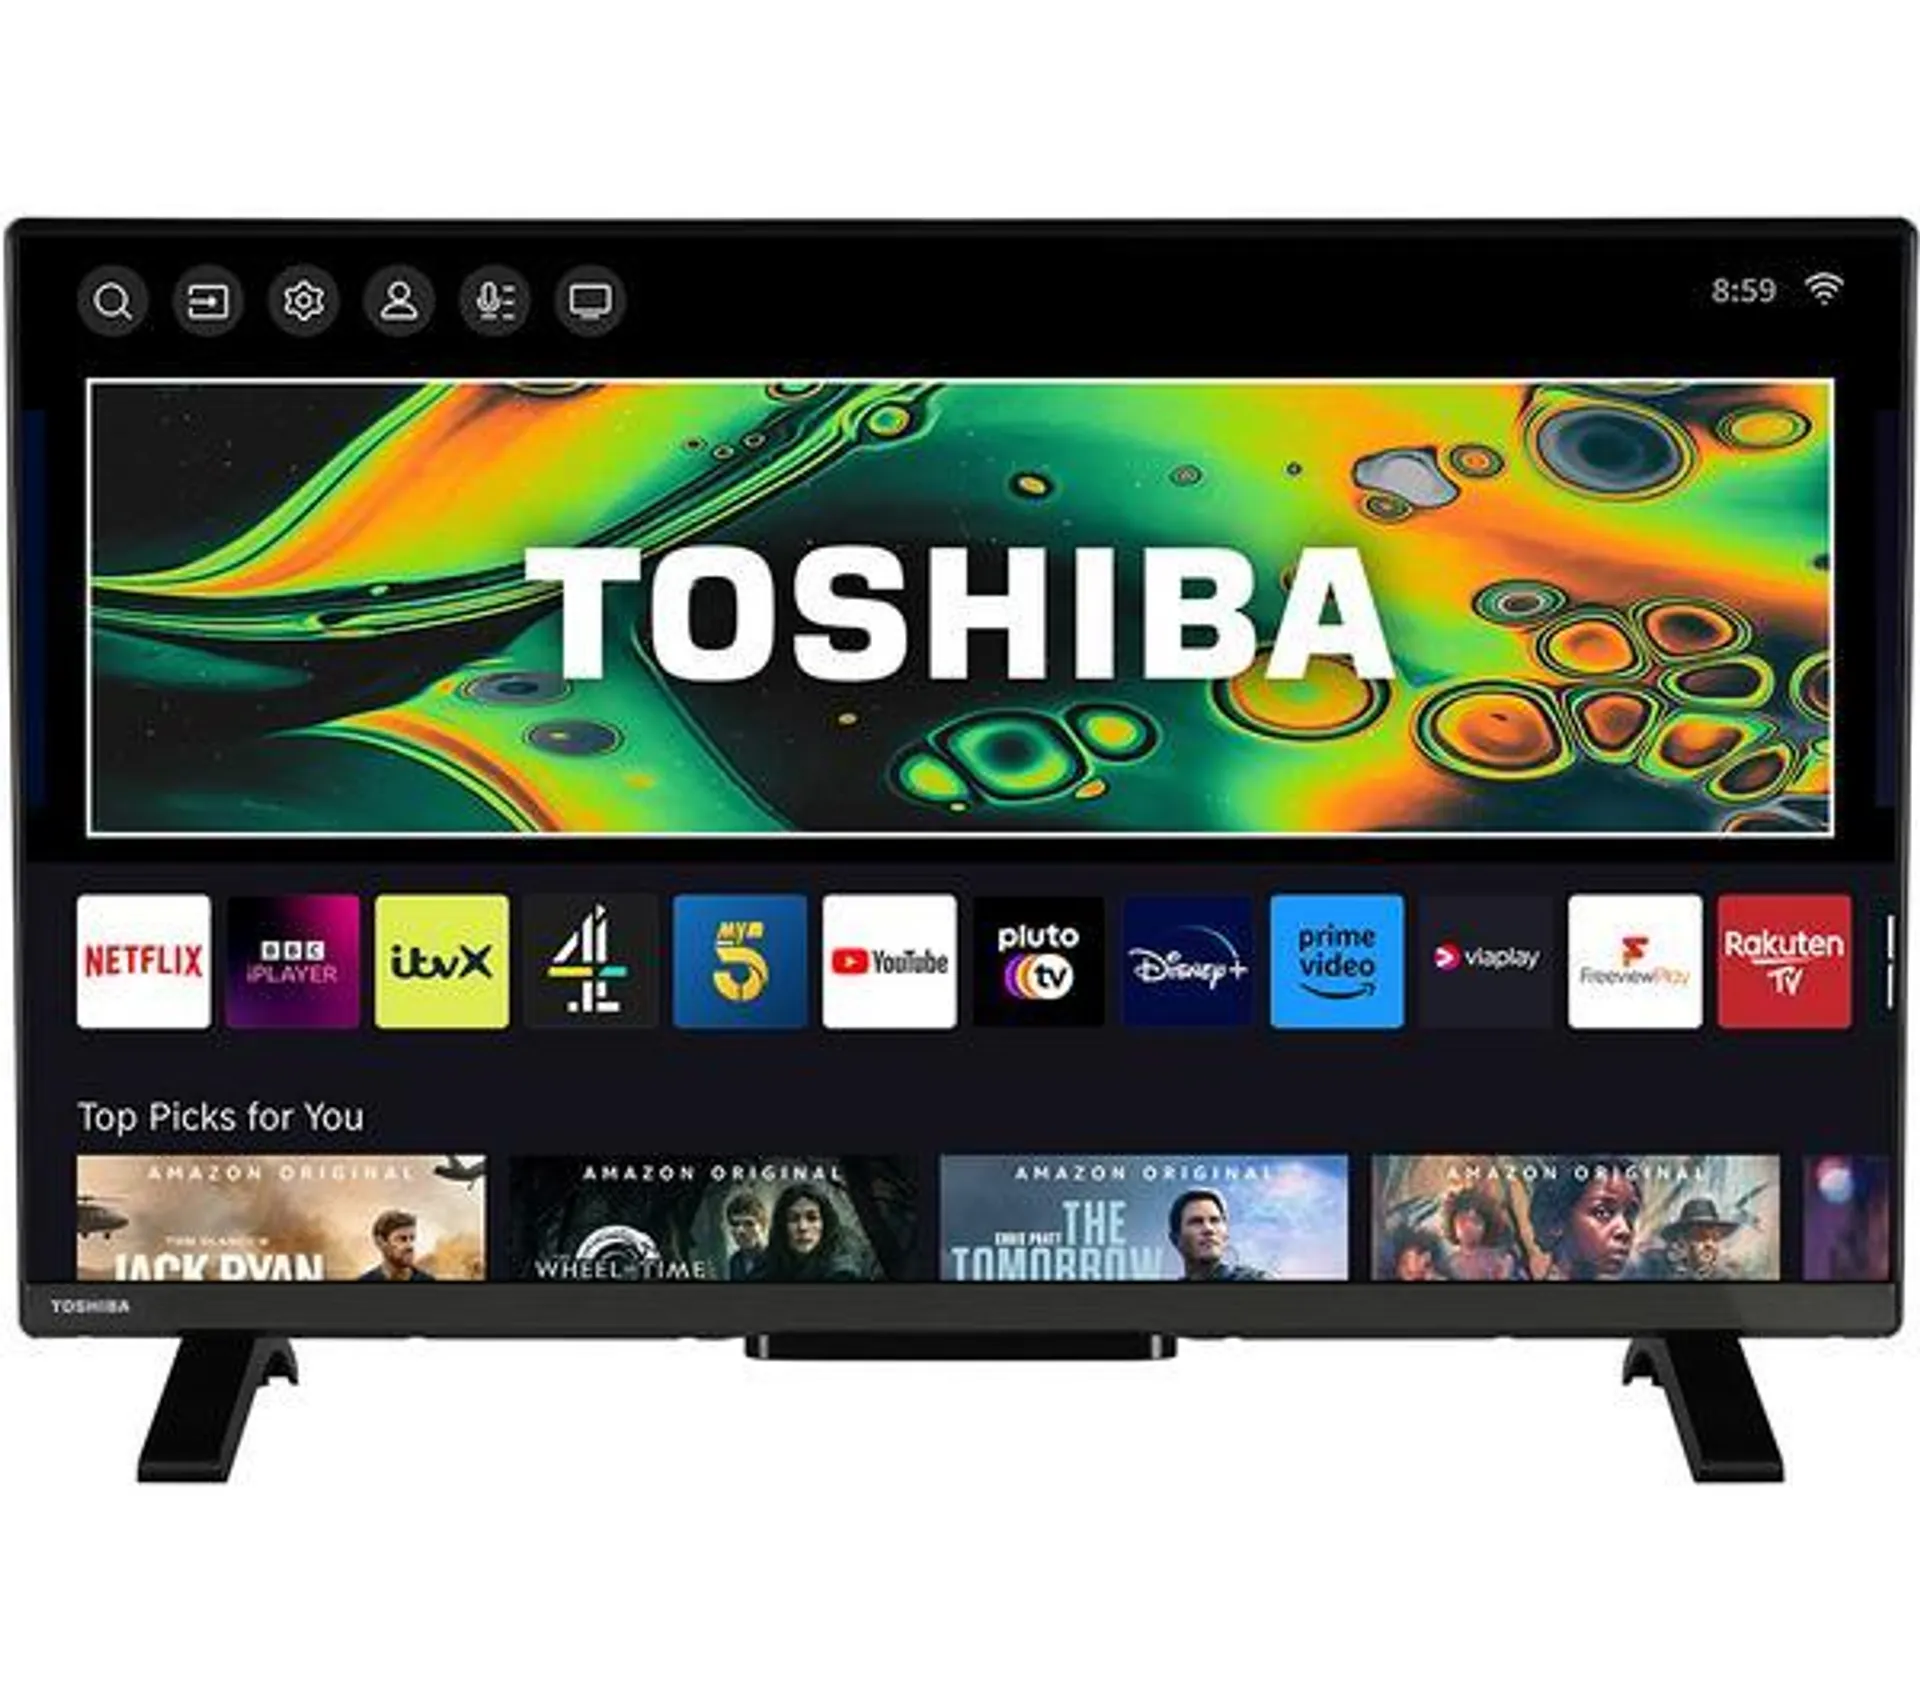 TOSHIBA 43LV2E63DB 43" Smart Full HD LED TV